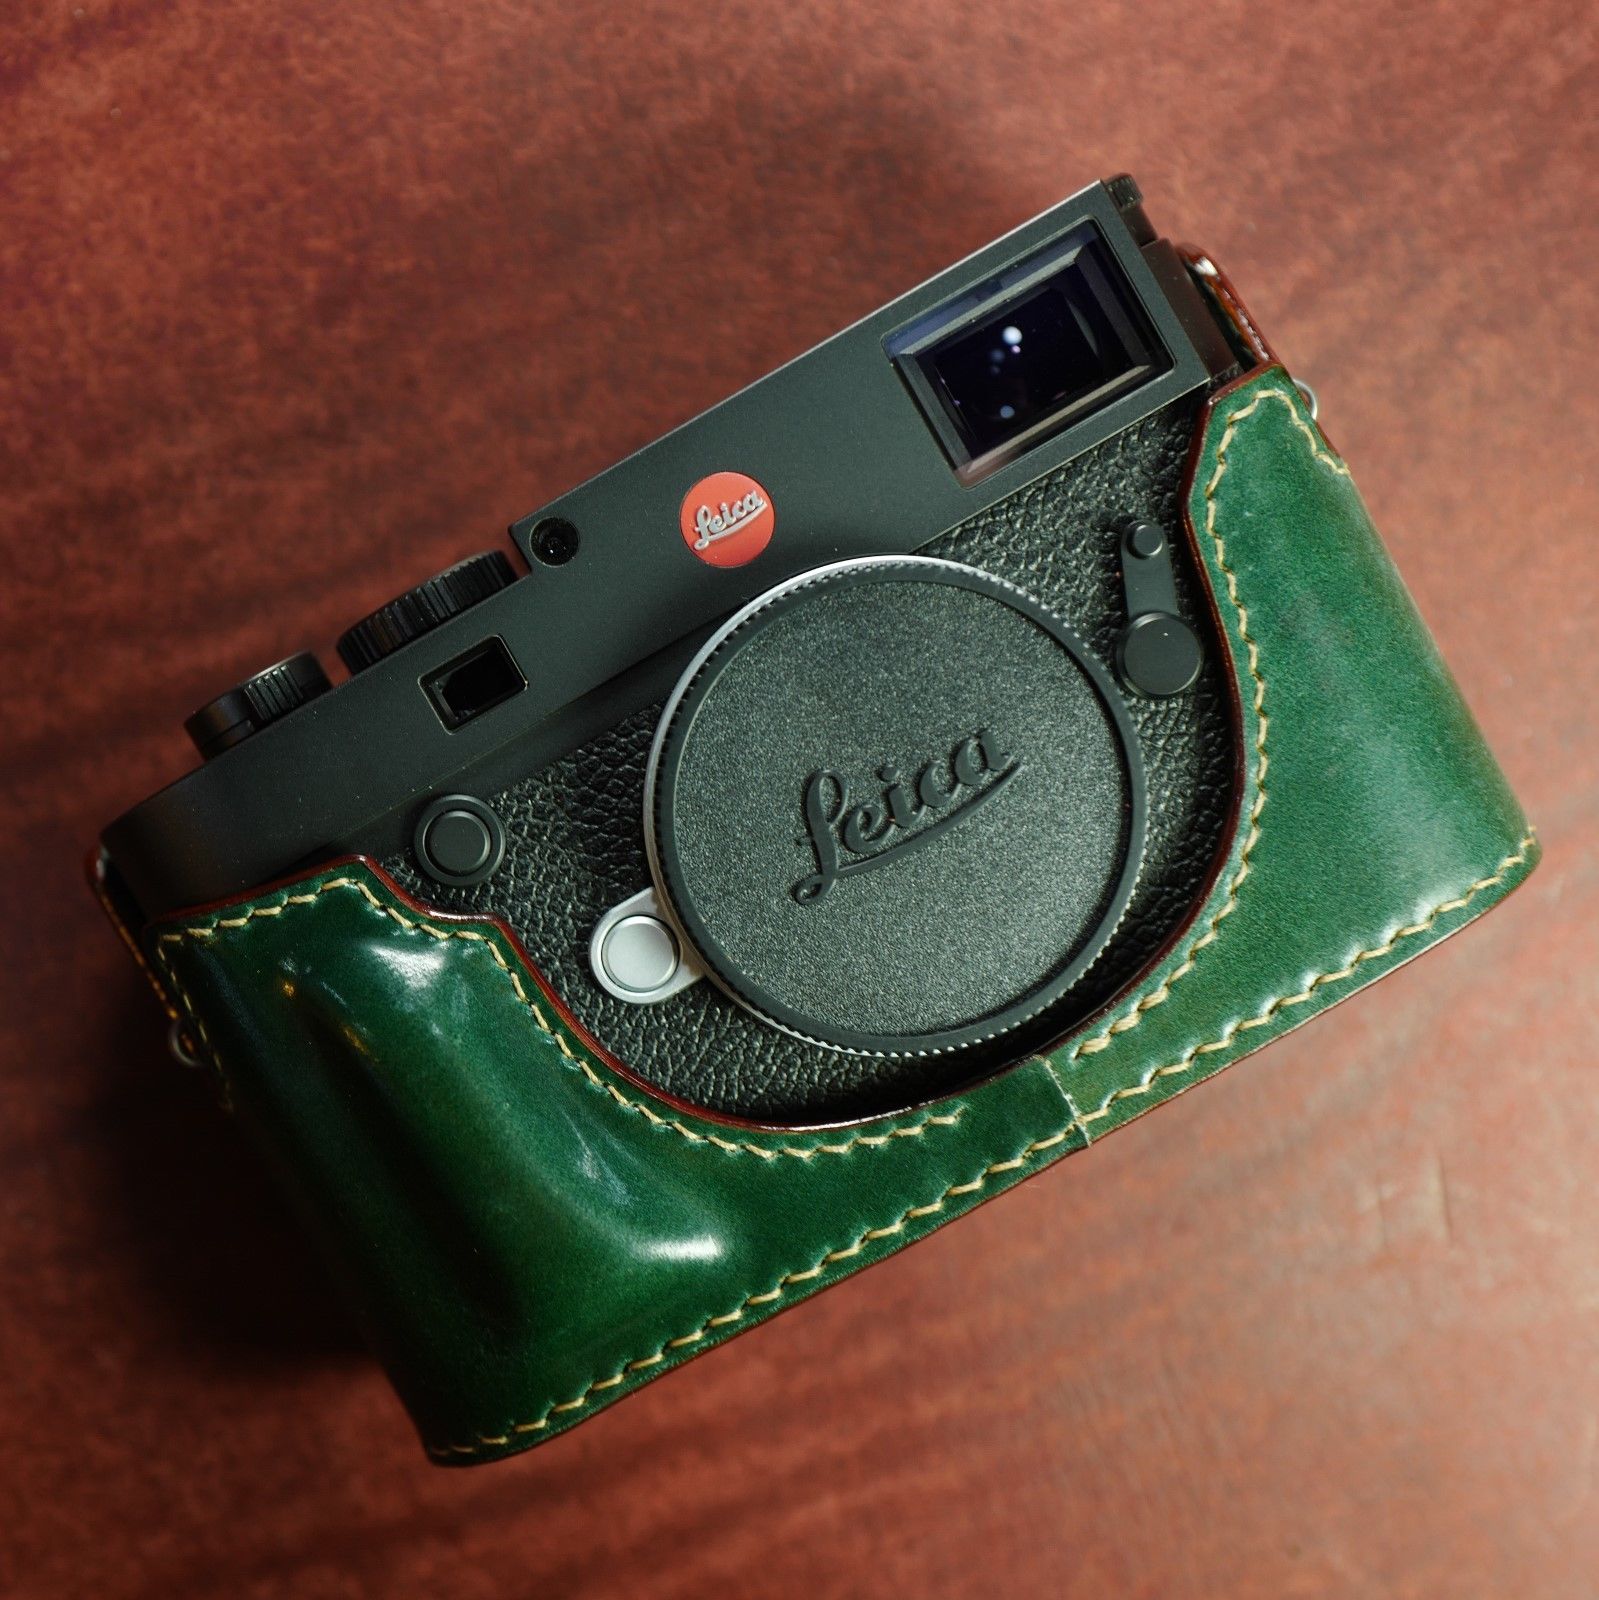 Leica M10 half cases - Leica Rumors